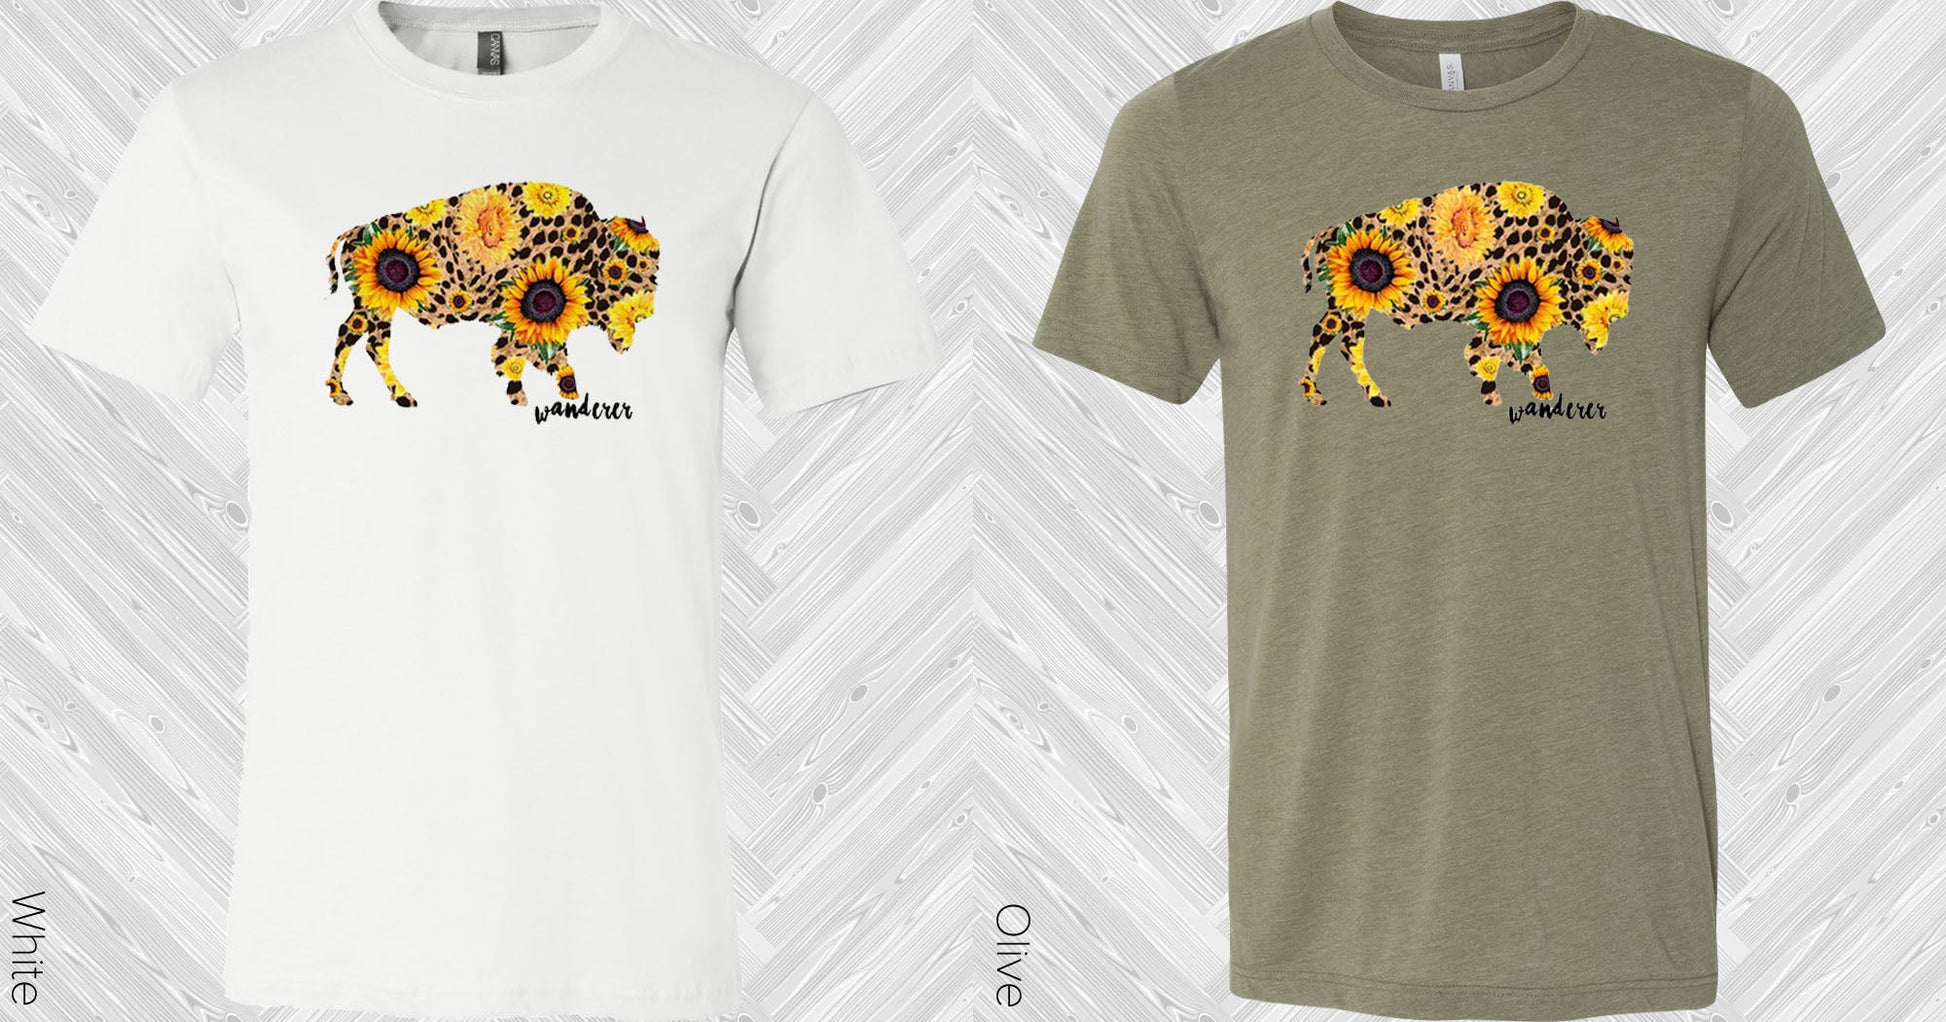 Sunflower Cheetah Wanderer Buffalo Graphic Tee Graphic Tee